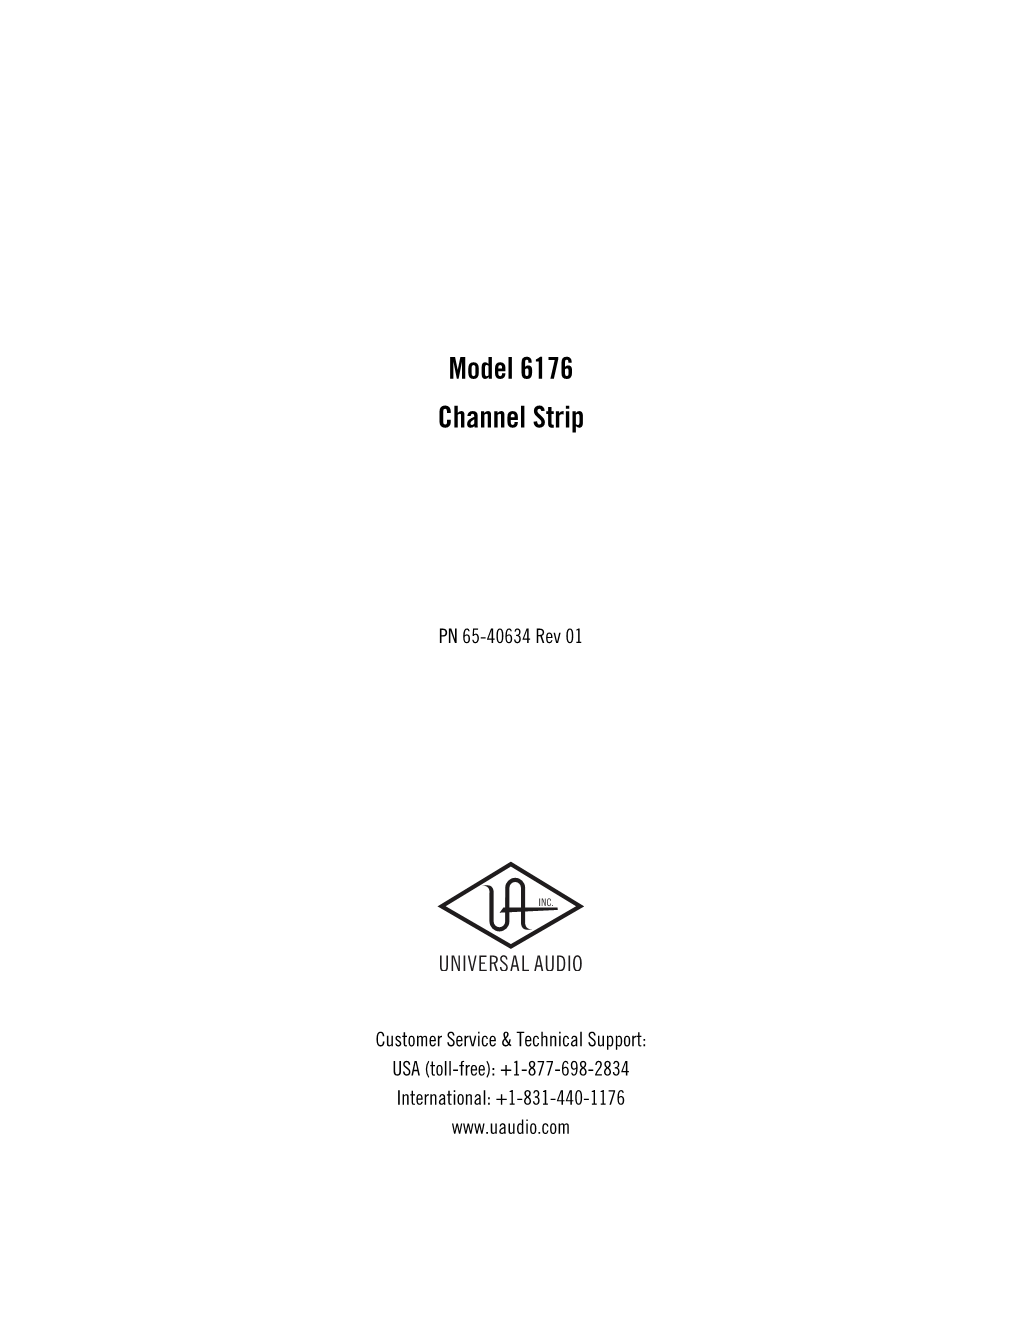 UA 6176 Manual